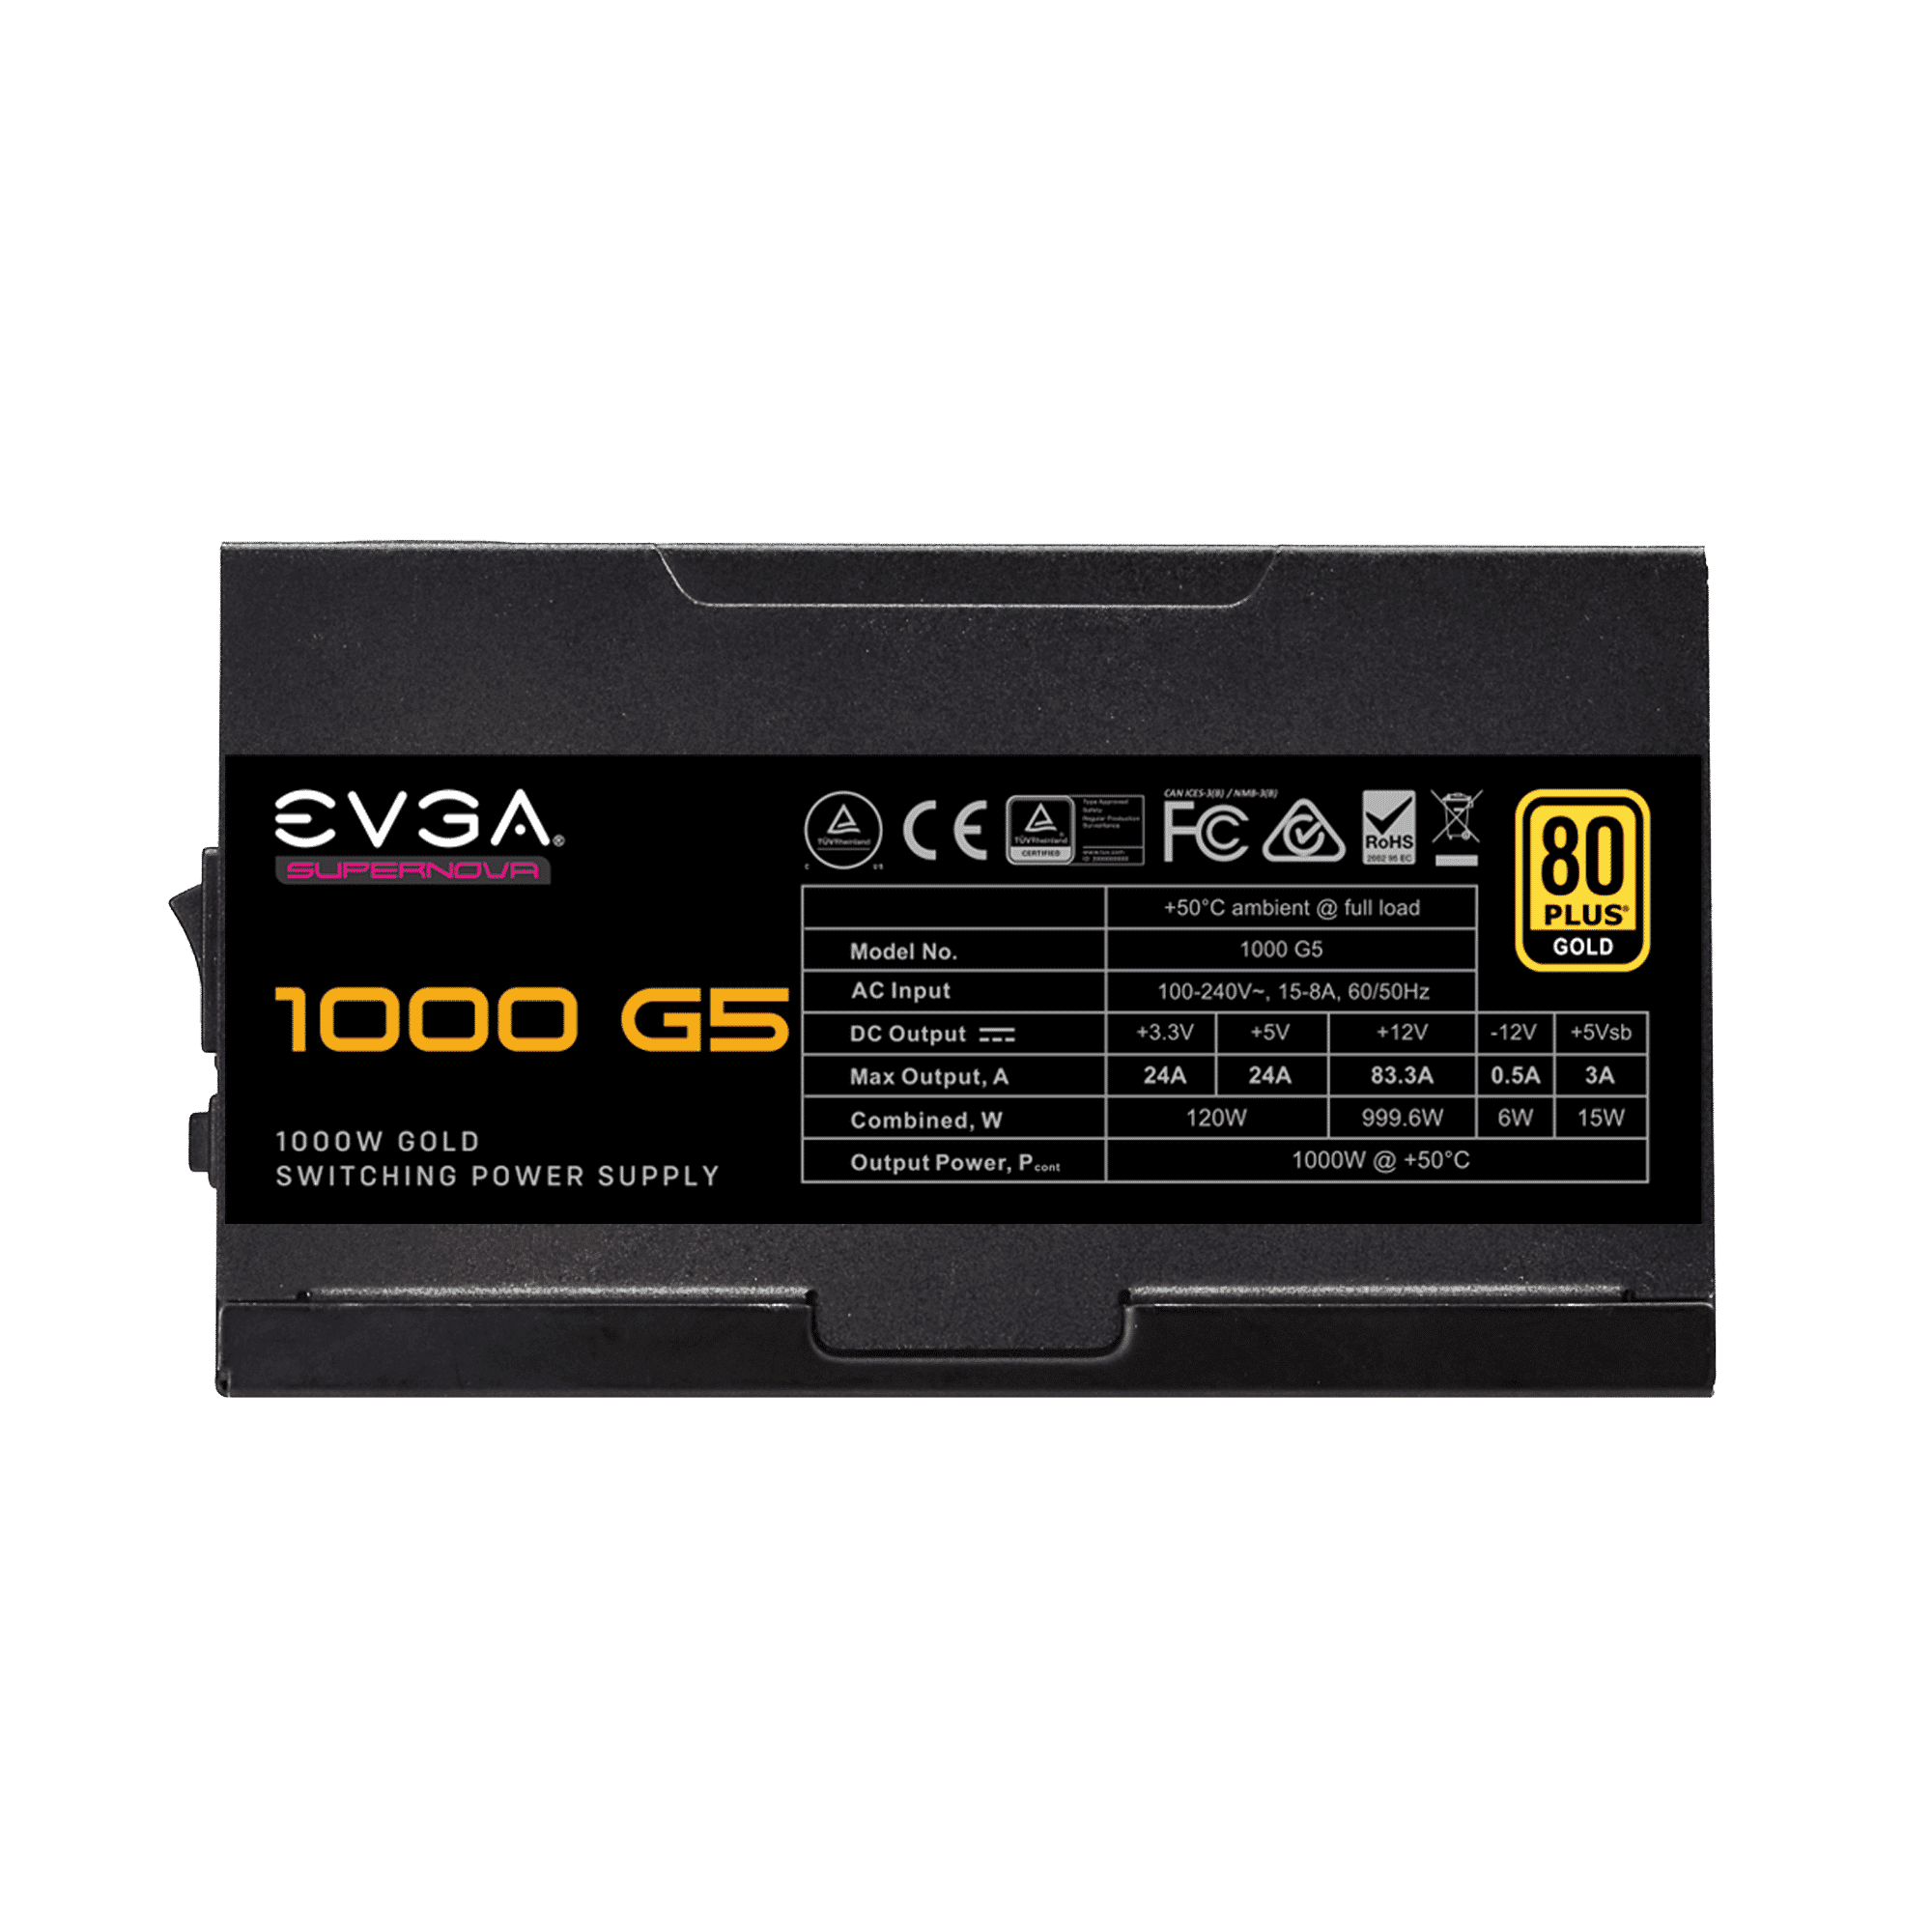 EVGA SuperNOVA 1000 G5 Side View